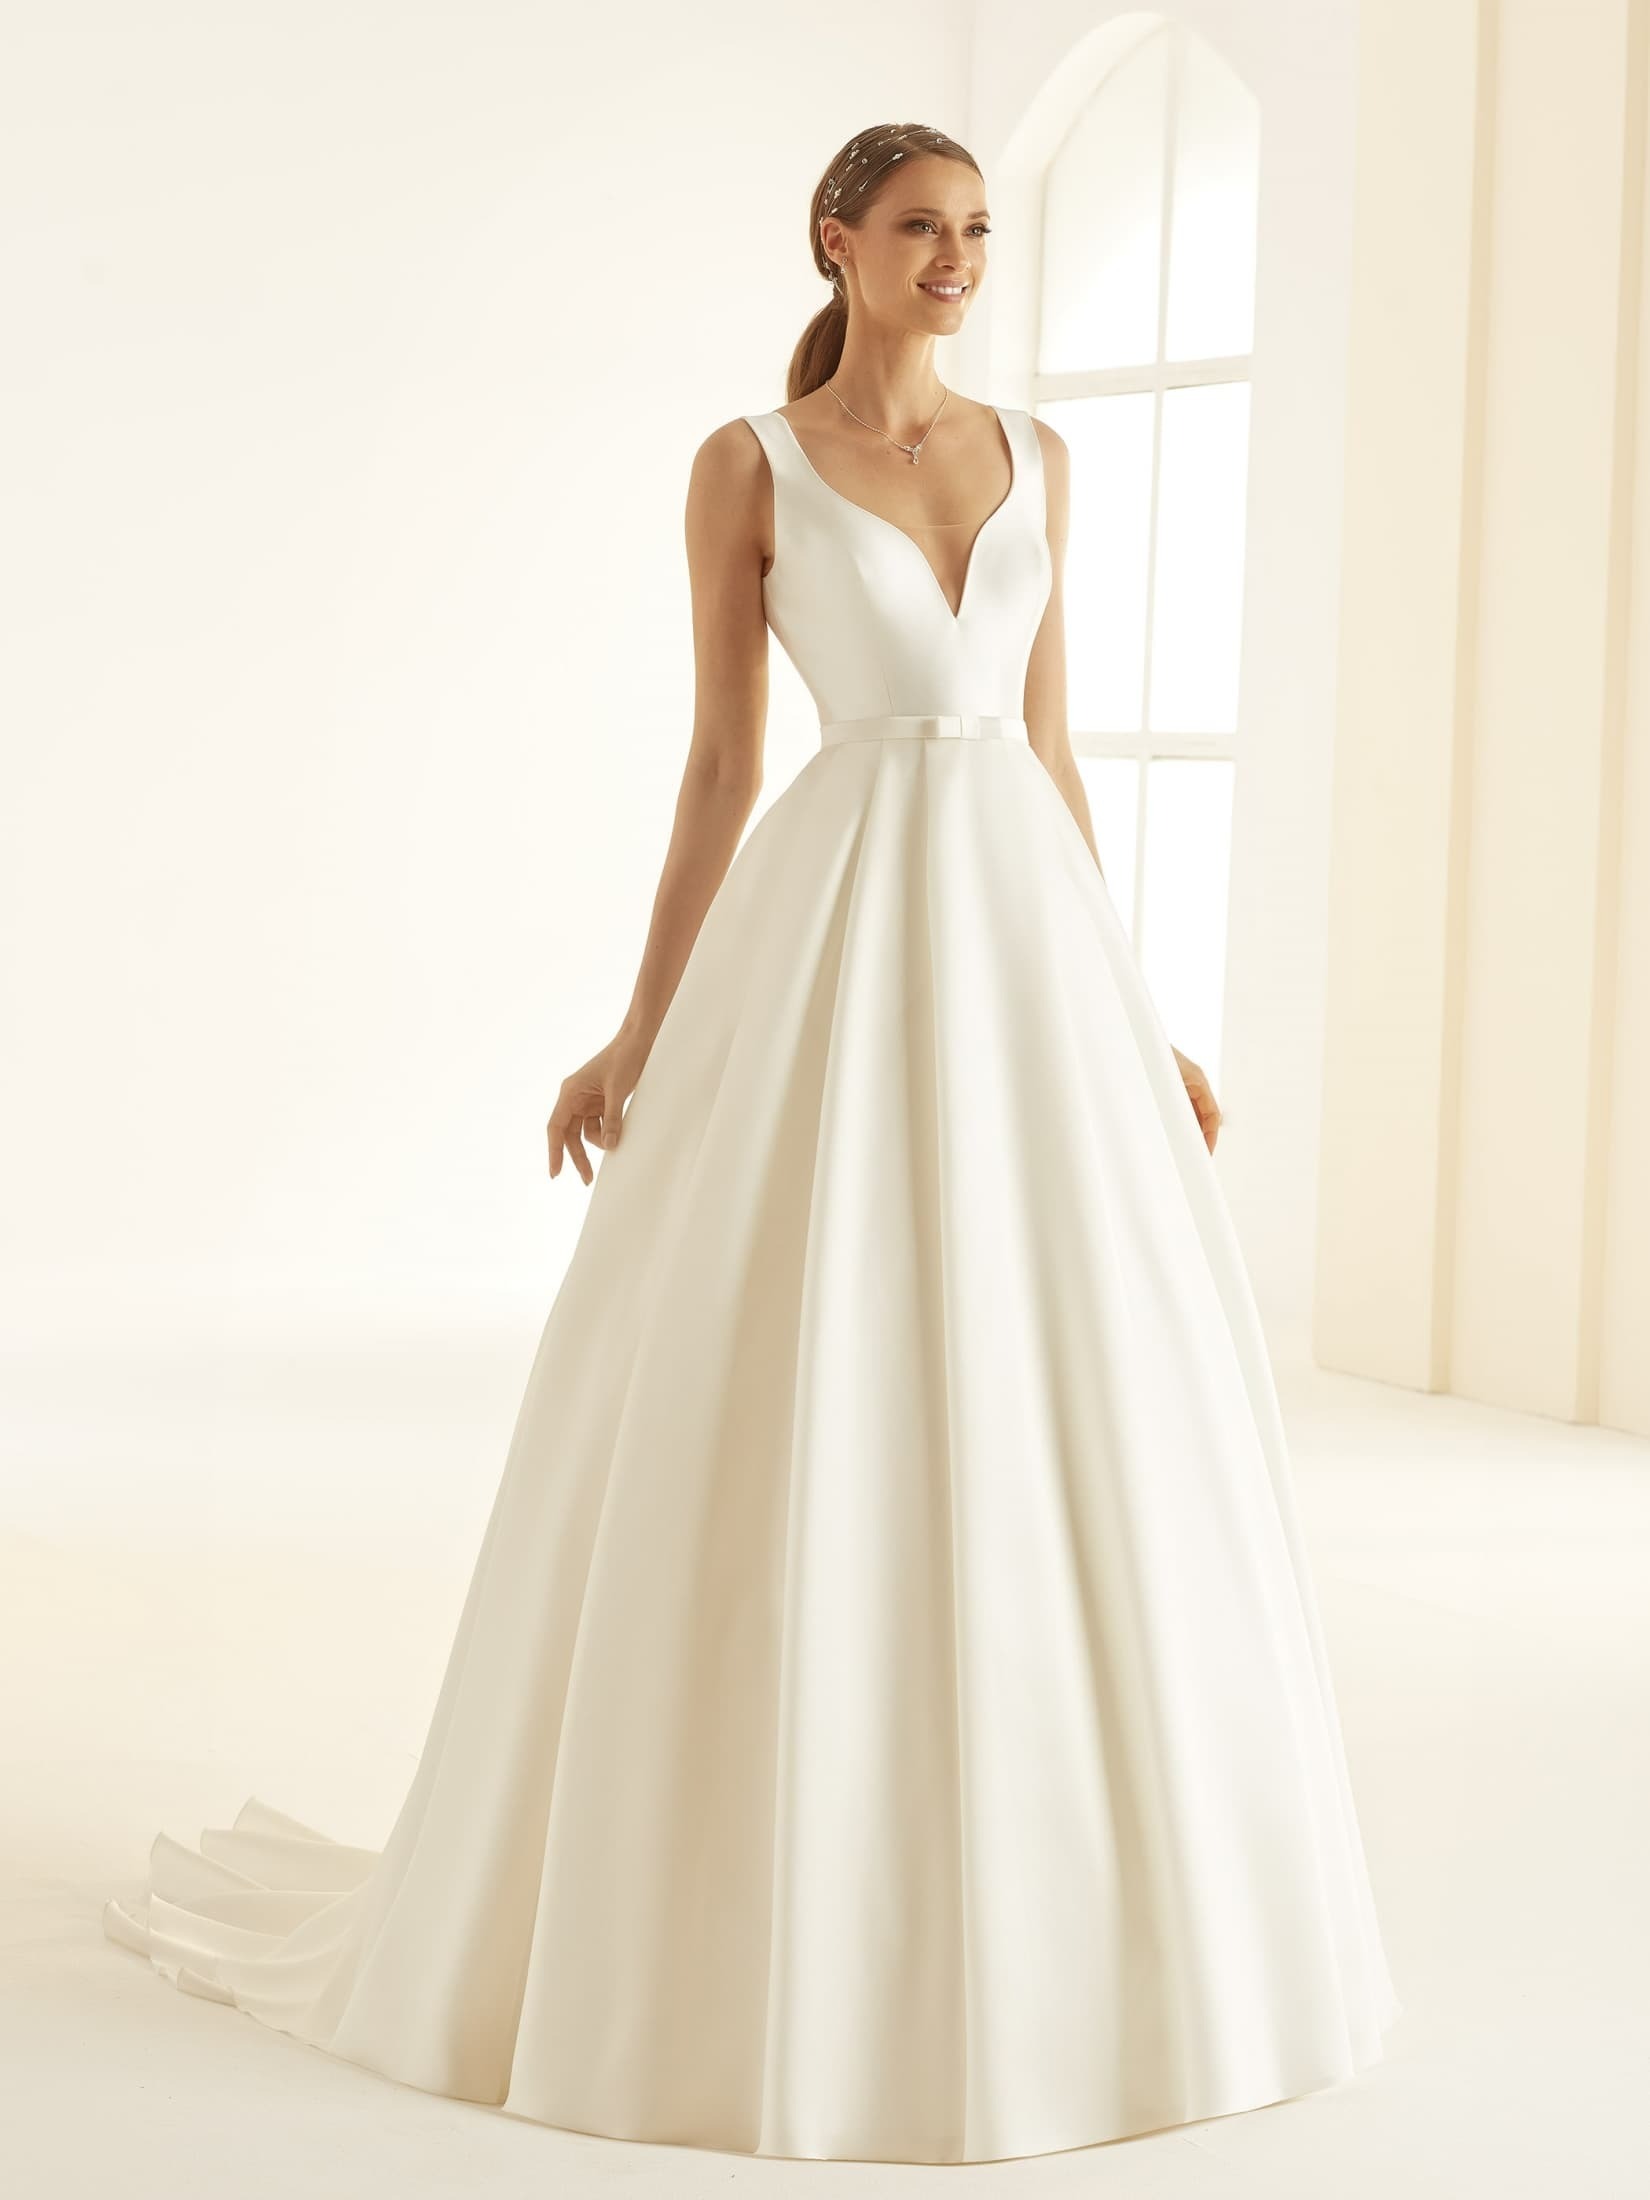 Obrázek ženy se svatebními šaty Jessica od značky Bianco Evento